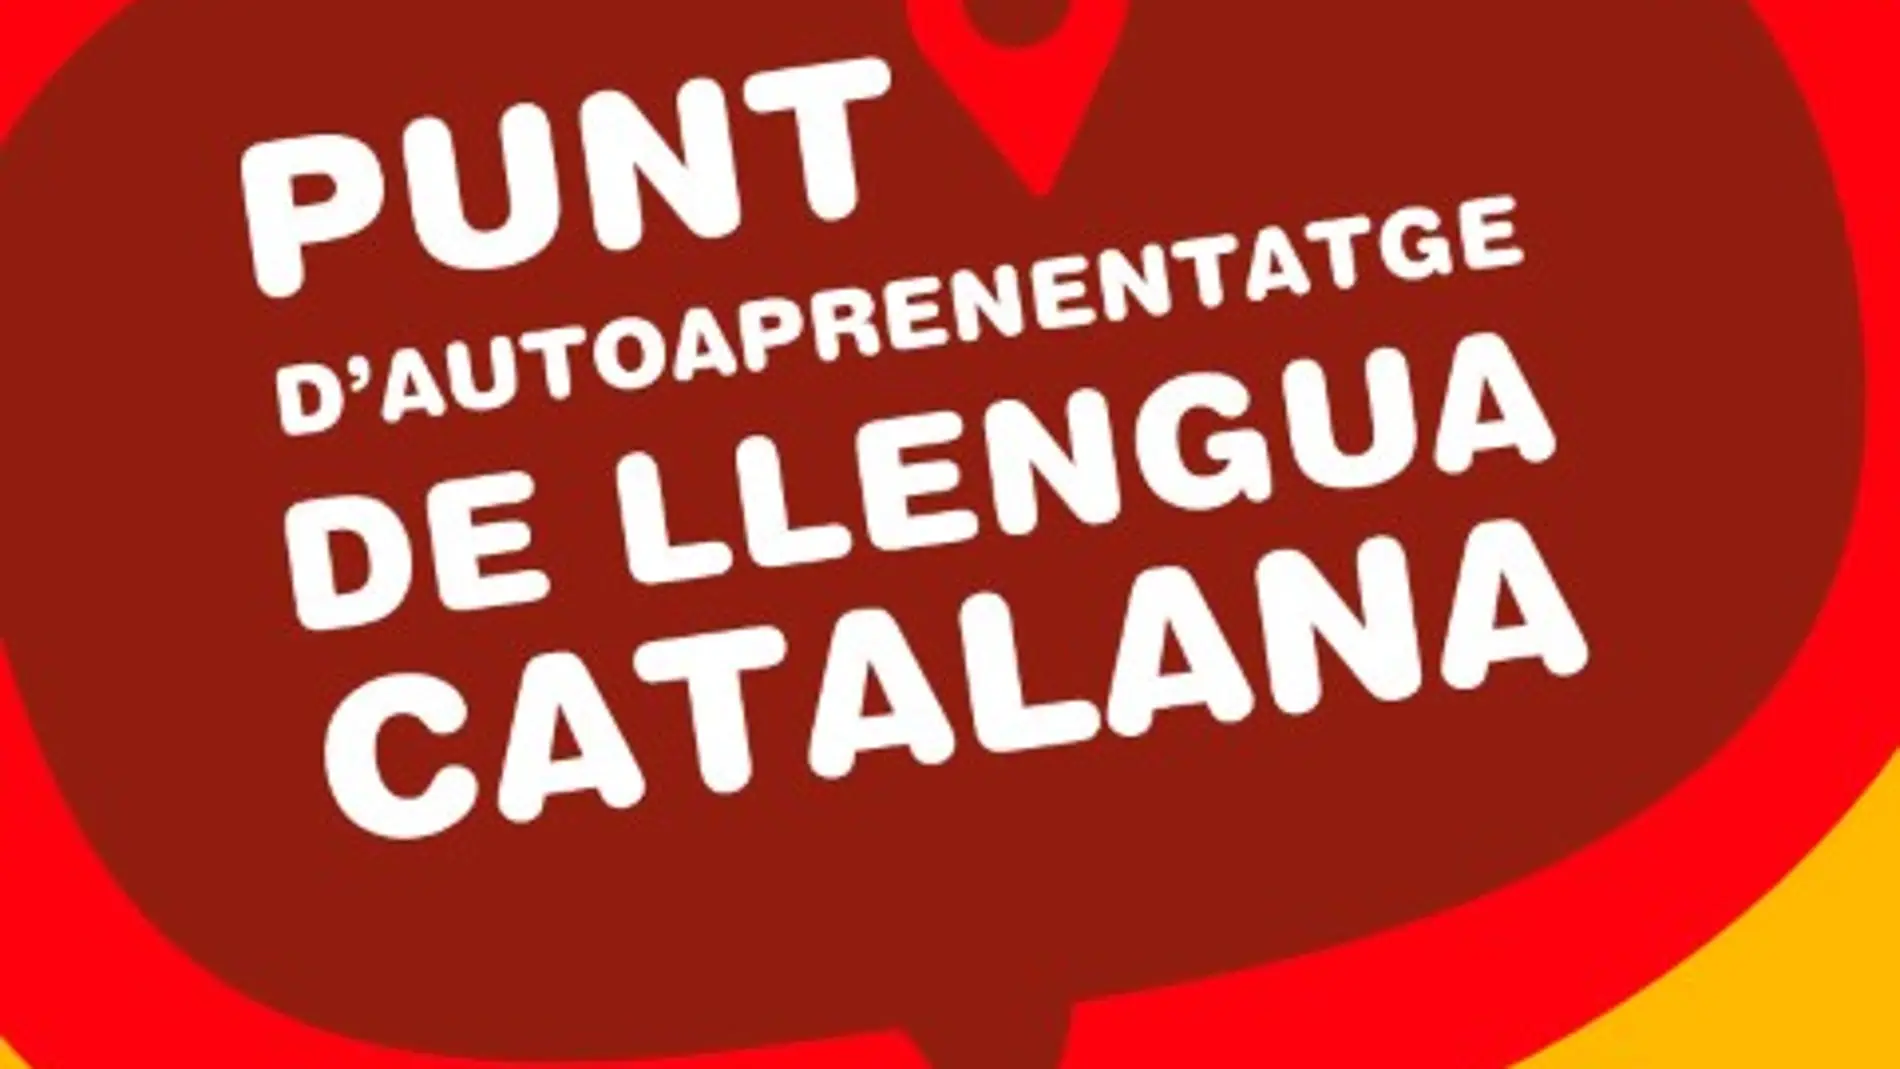 Sant Antoni reactiva el Punt d’Autoaprenentatge de Llengua Catalana 